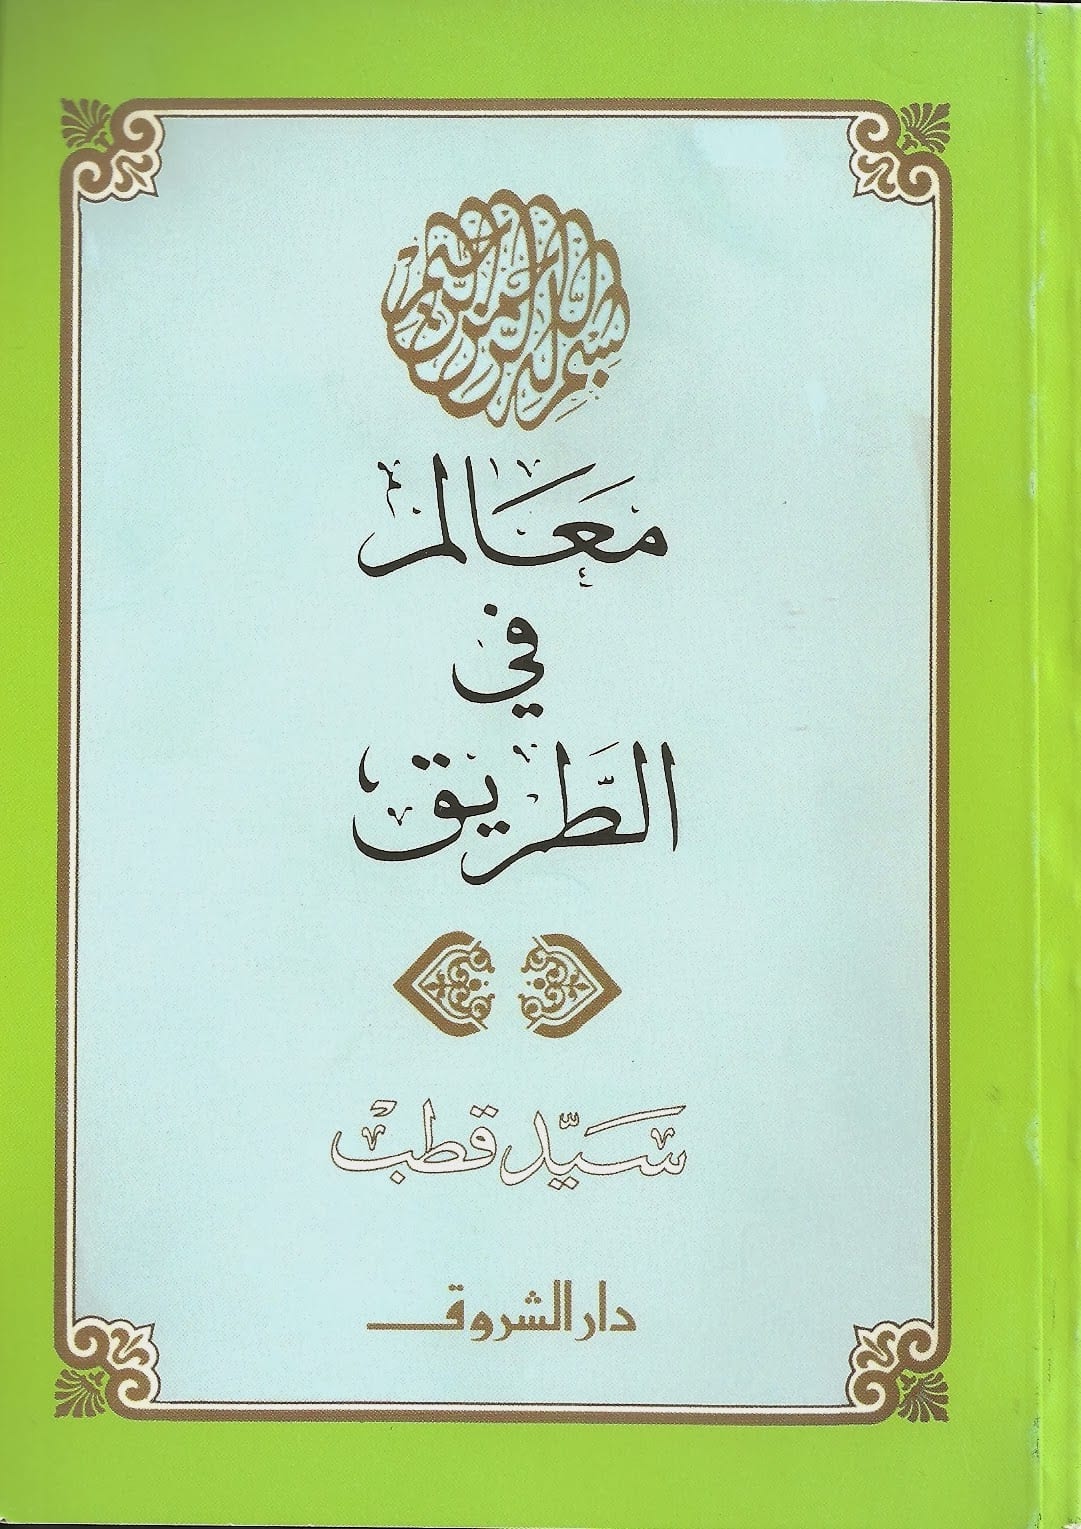 غلاف كتاب  "معالم في الطريق"، أحد أهم المرجعيات التي وجَّهت حركة الاخوان المسلمين في العقود الماضية. الصورة دار الشروق 